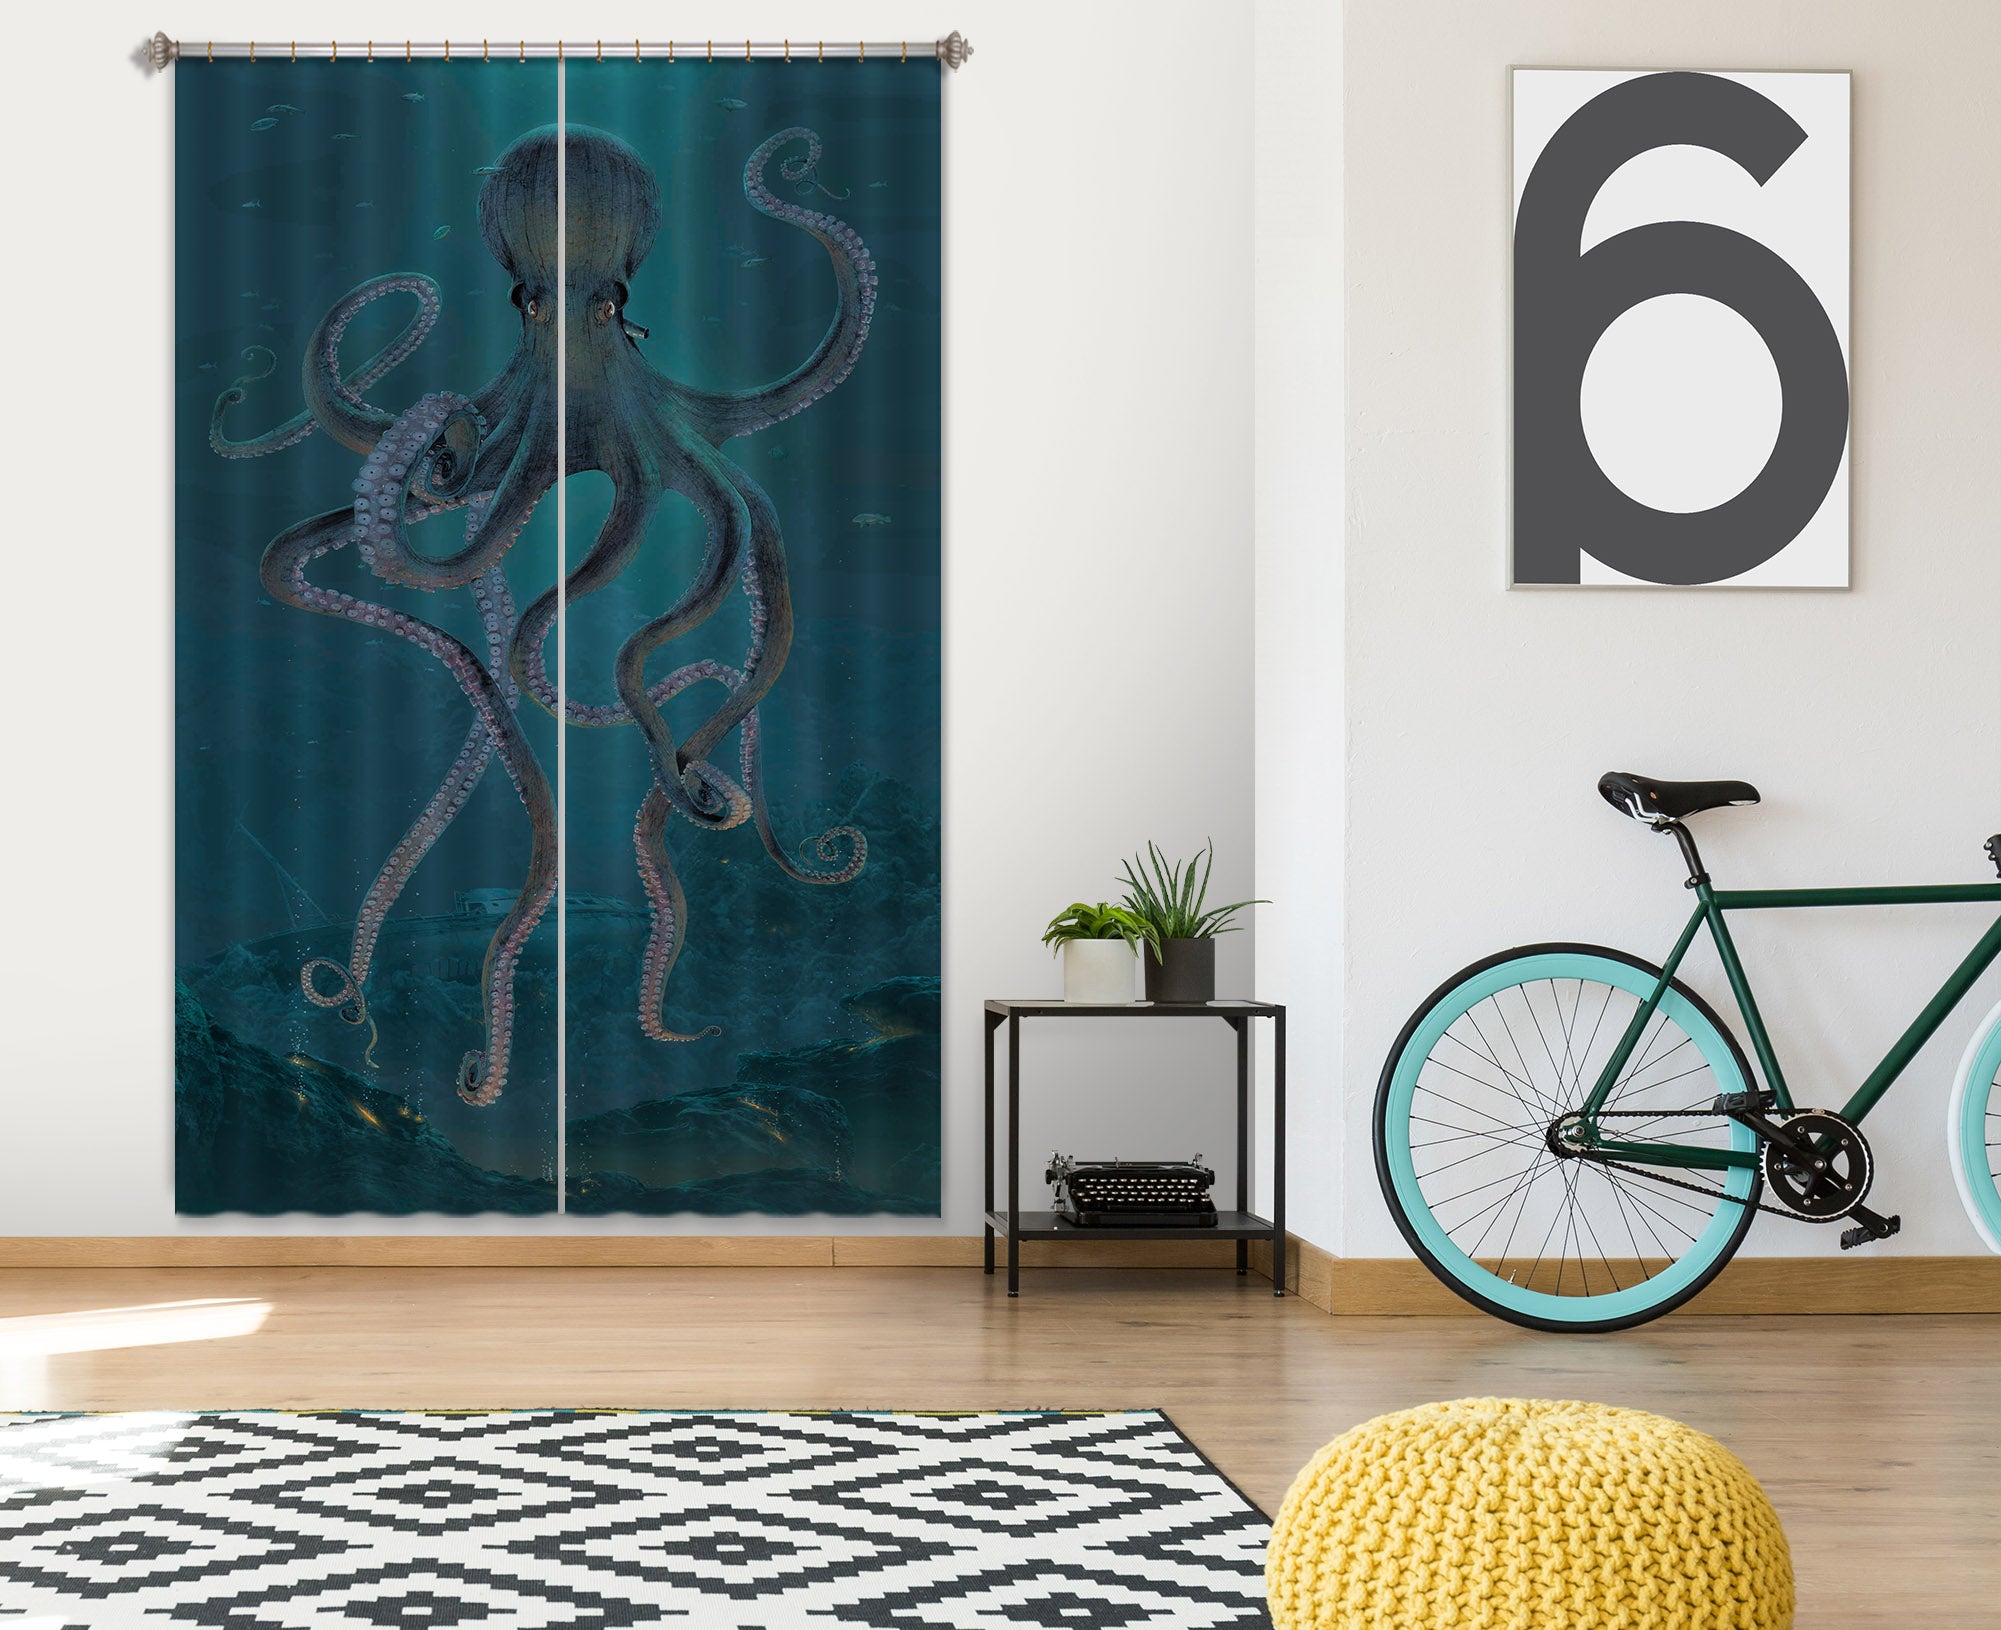 3D Giant Octopus 039 Vincent Hie Curtain Curtains Drapes